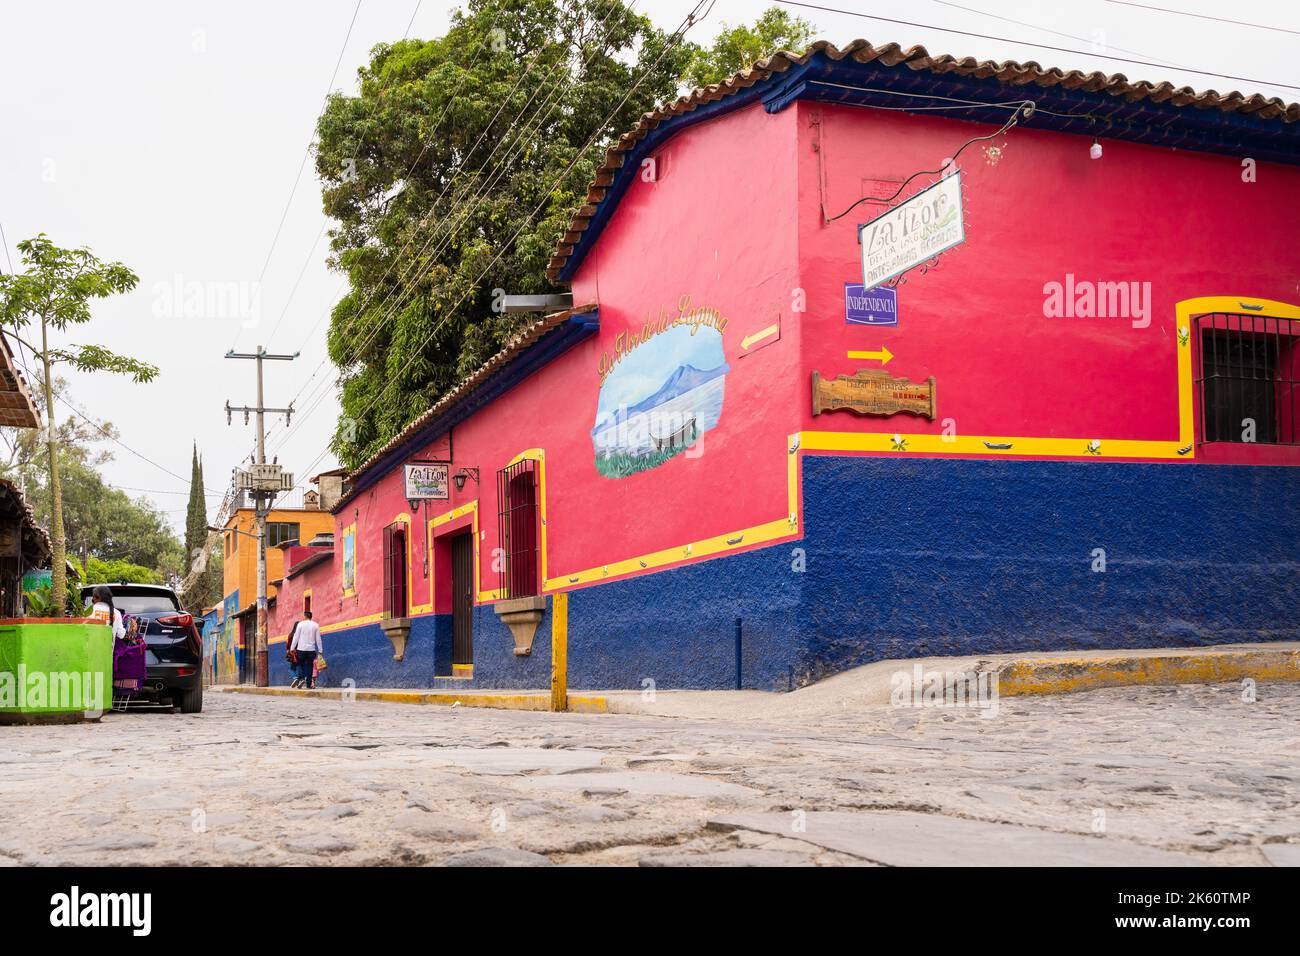 Chapala, Jalisco, Mexique - 10 mai 2021 : façade de bâtiment rouge et bleu sur la rue traditionnelle du village mexicain par la route en pierre de pierre à galets Banque D'Images